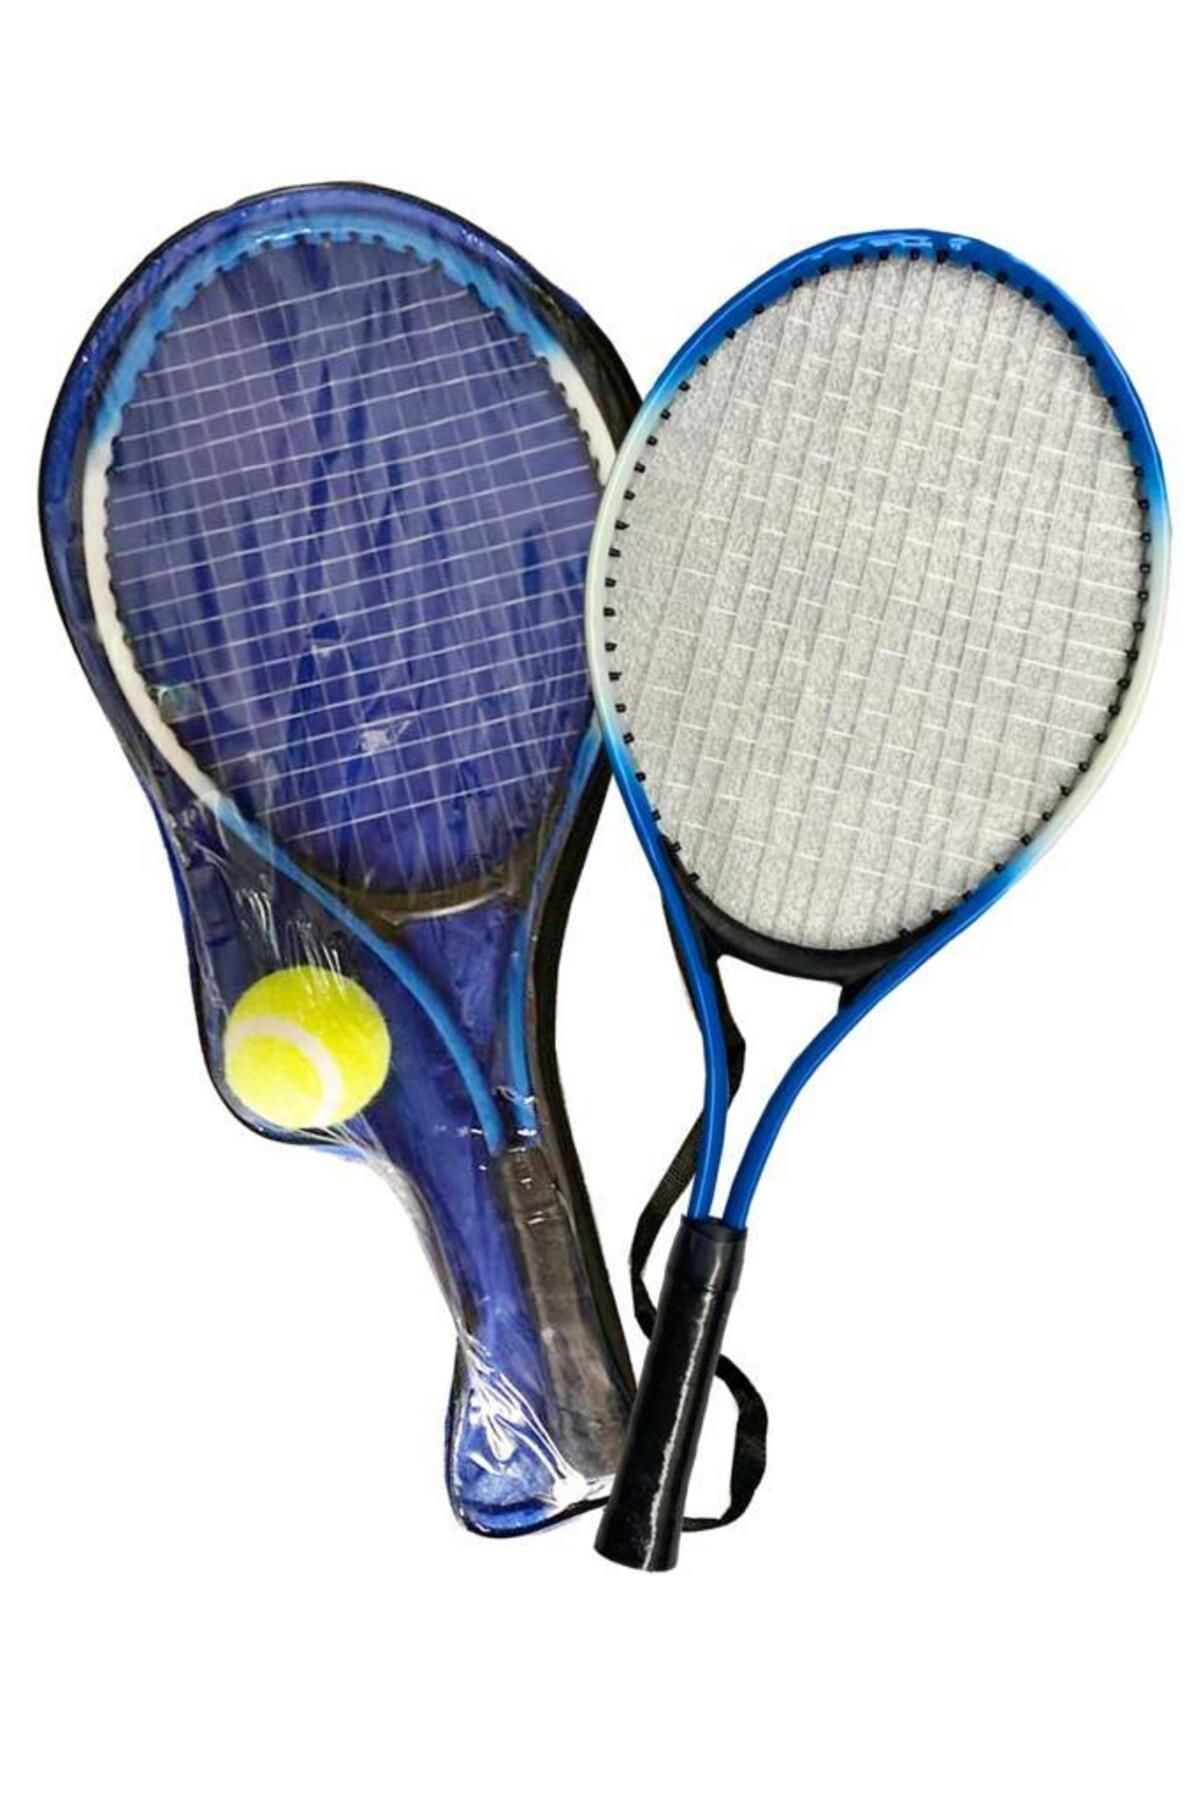 Liggo Çocuk Tenis Raketi Seti 21 Inç 2 Raket 1 Top Çantalı Set